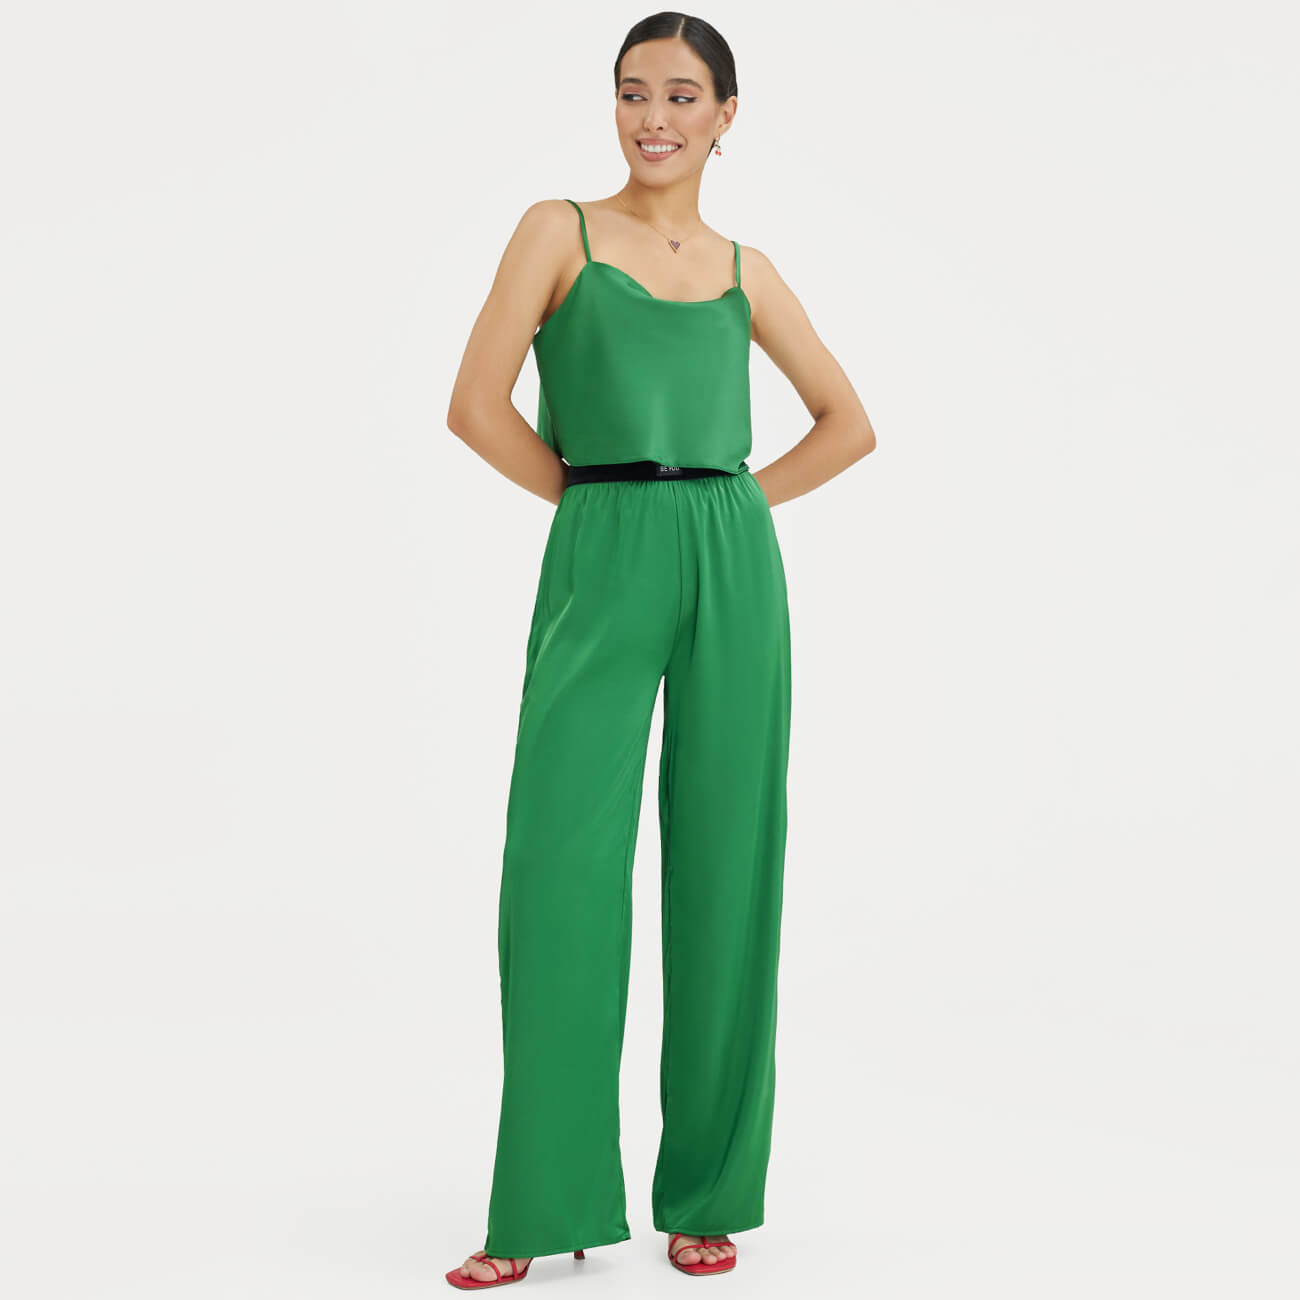 Брюки женские, р. M, широкие, полиэстер/эластан, зеленые, Madeline зеленые струящиеся брюки женские best mountain